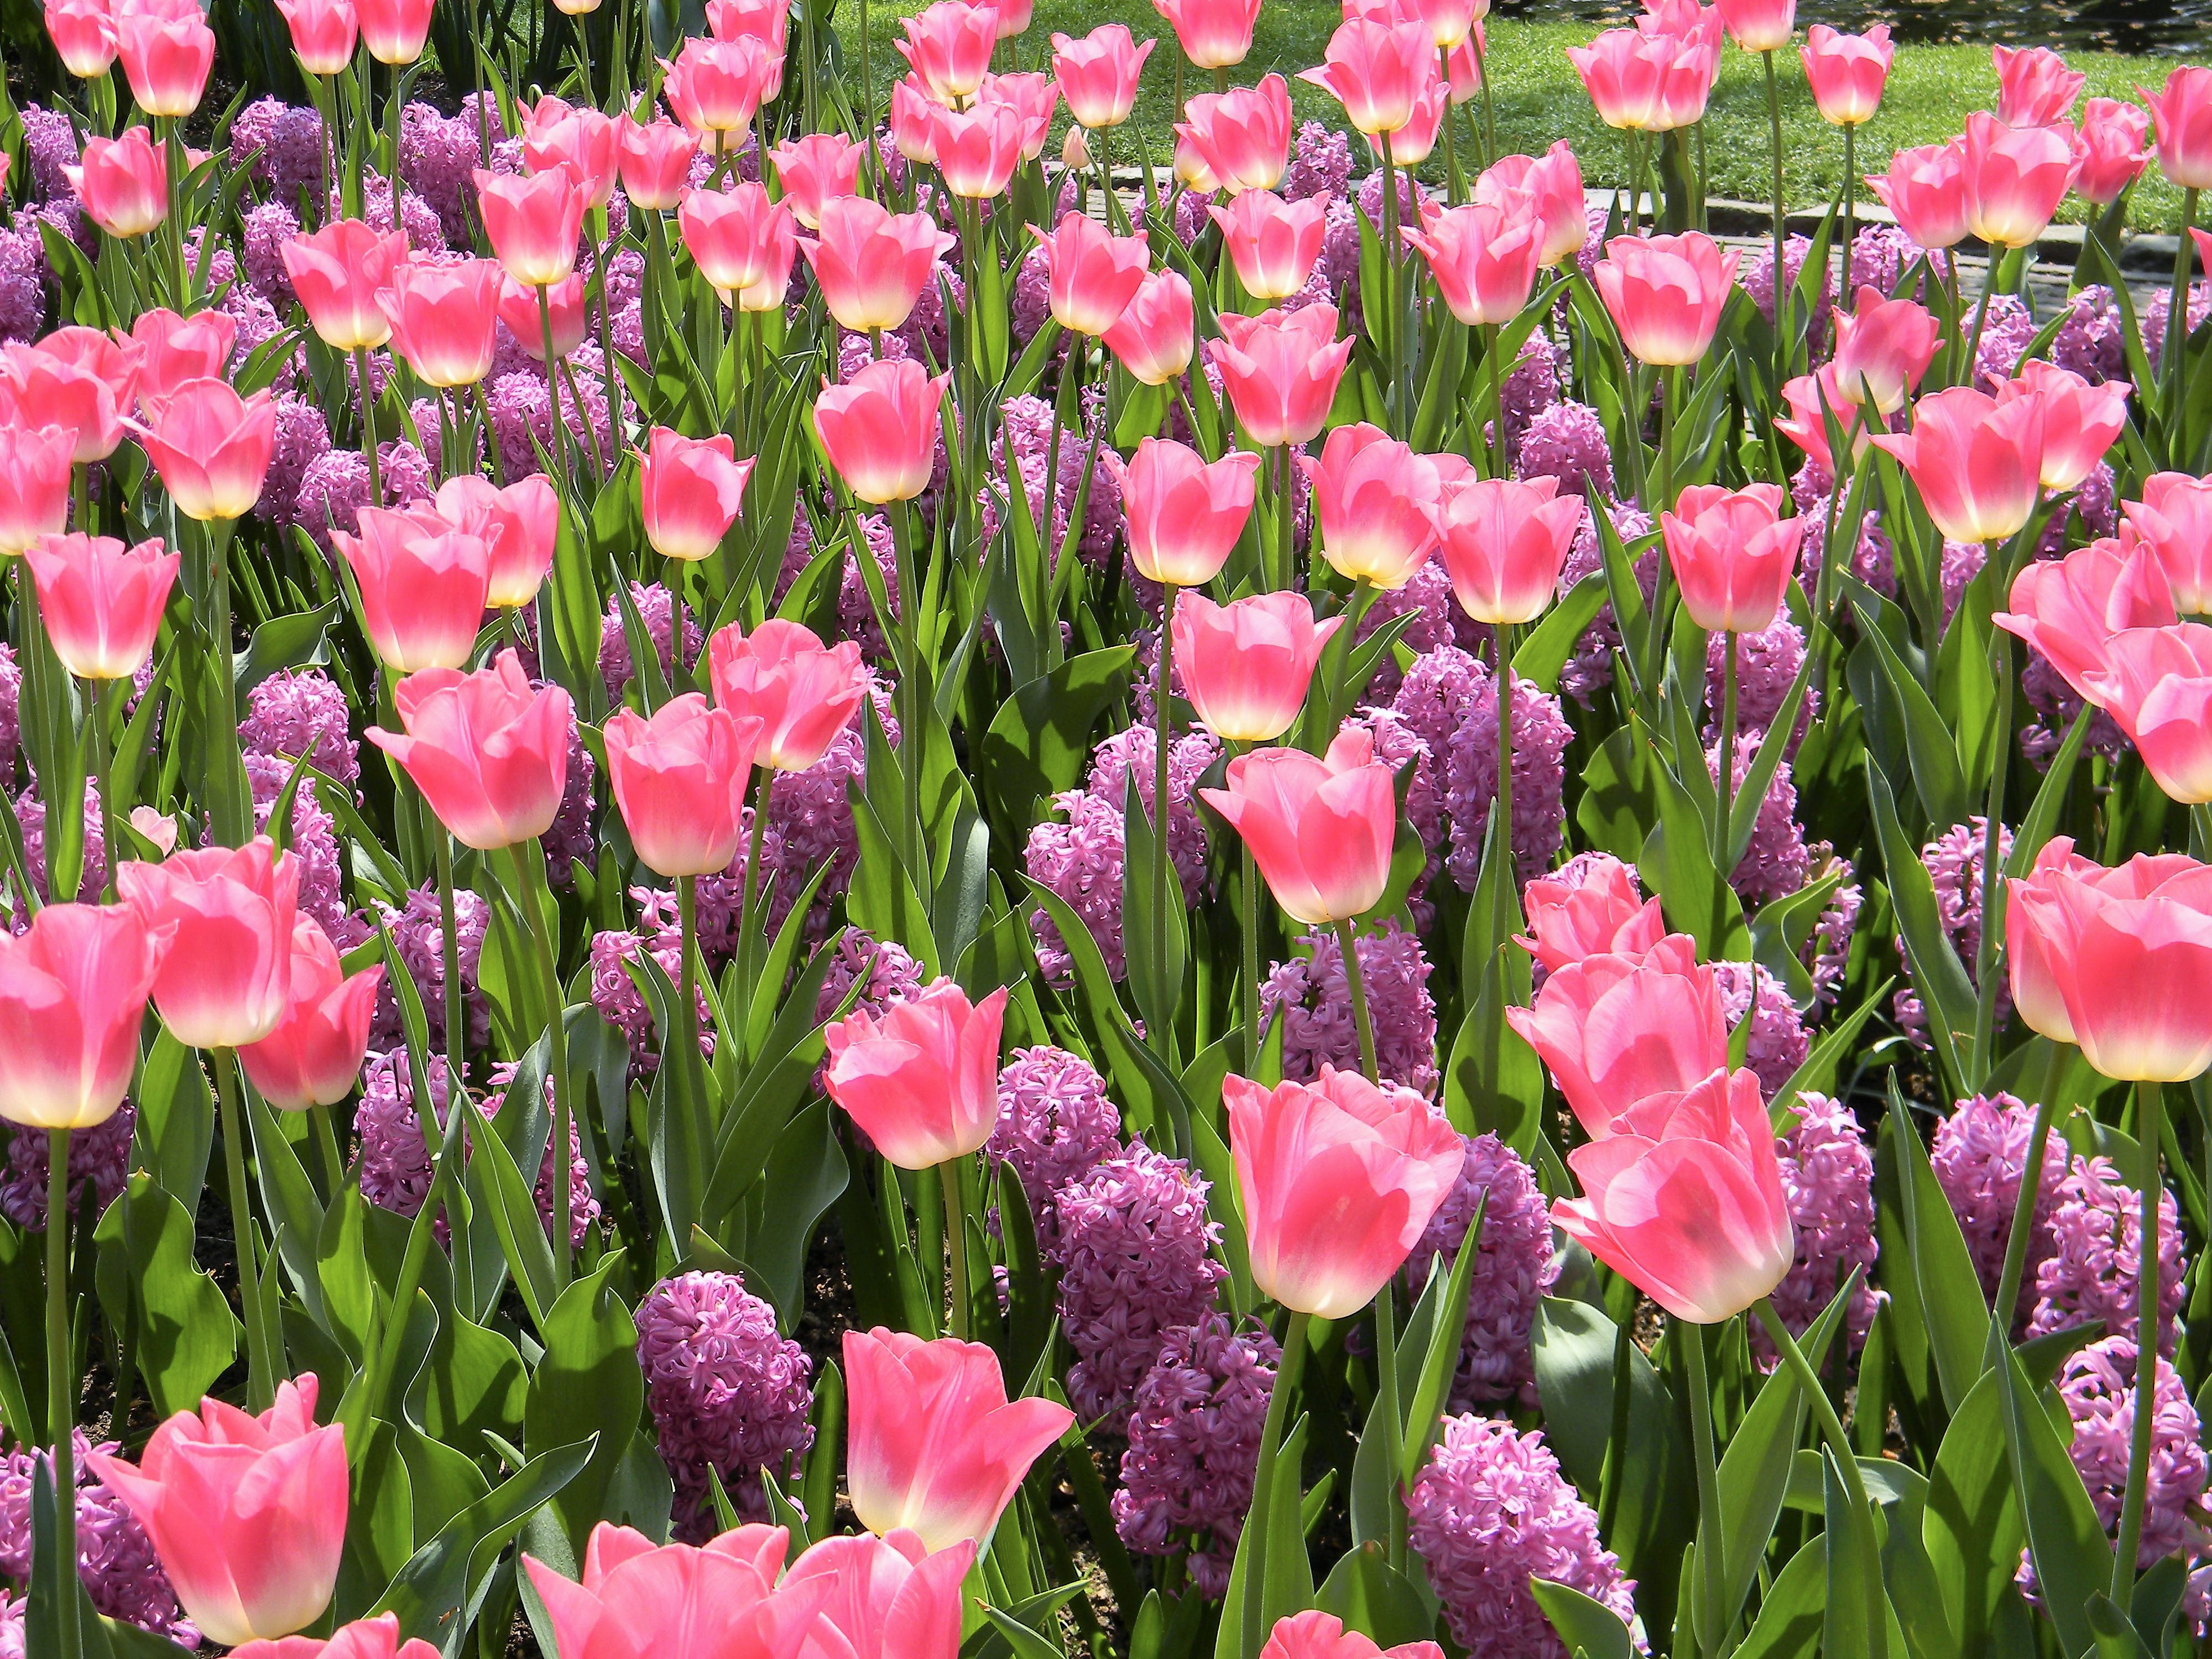 417271 descargar imagen tierra/naturaleza, flor, jardín, jacinto, parque, flor rosa, flor purpura, tulipán, flores: fondos de pantalla y protectores de pantalla gratis